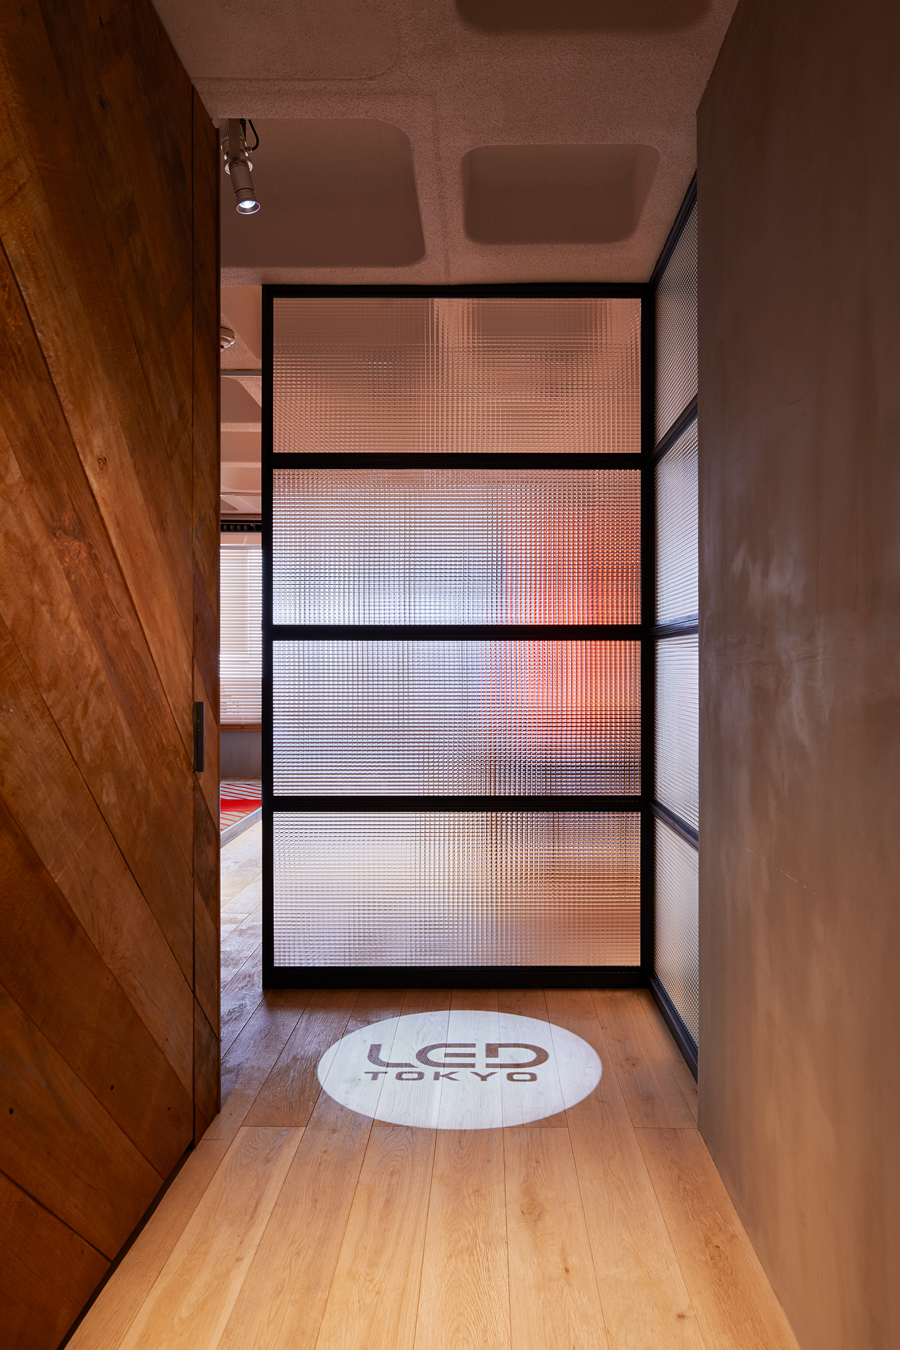 LED TOKYO SHOWROOM | Design Label